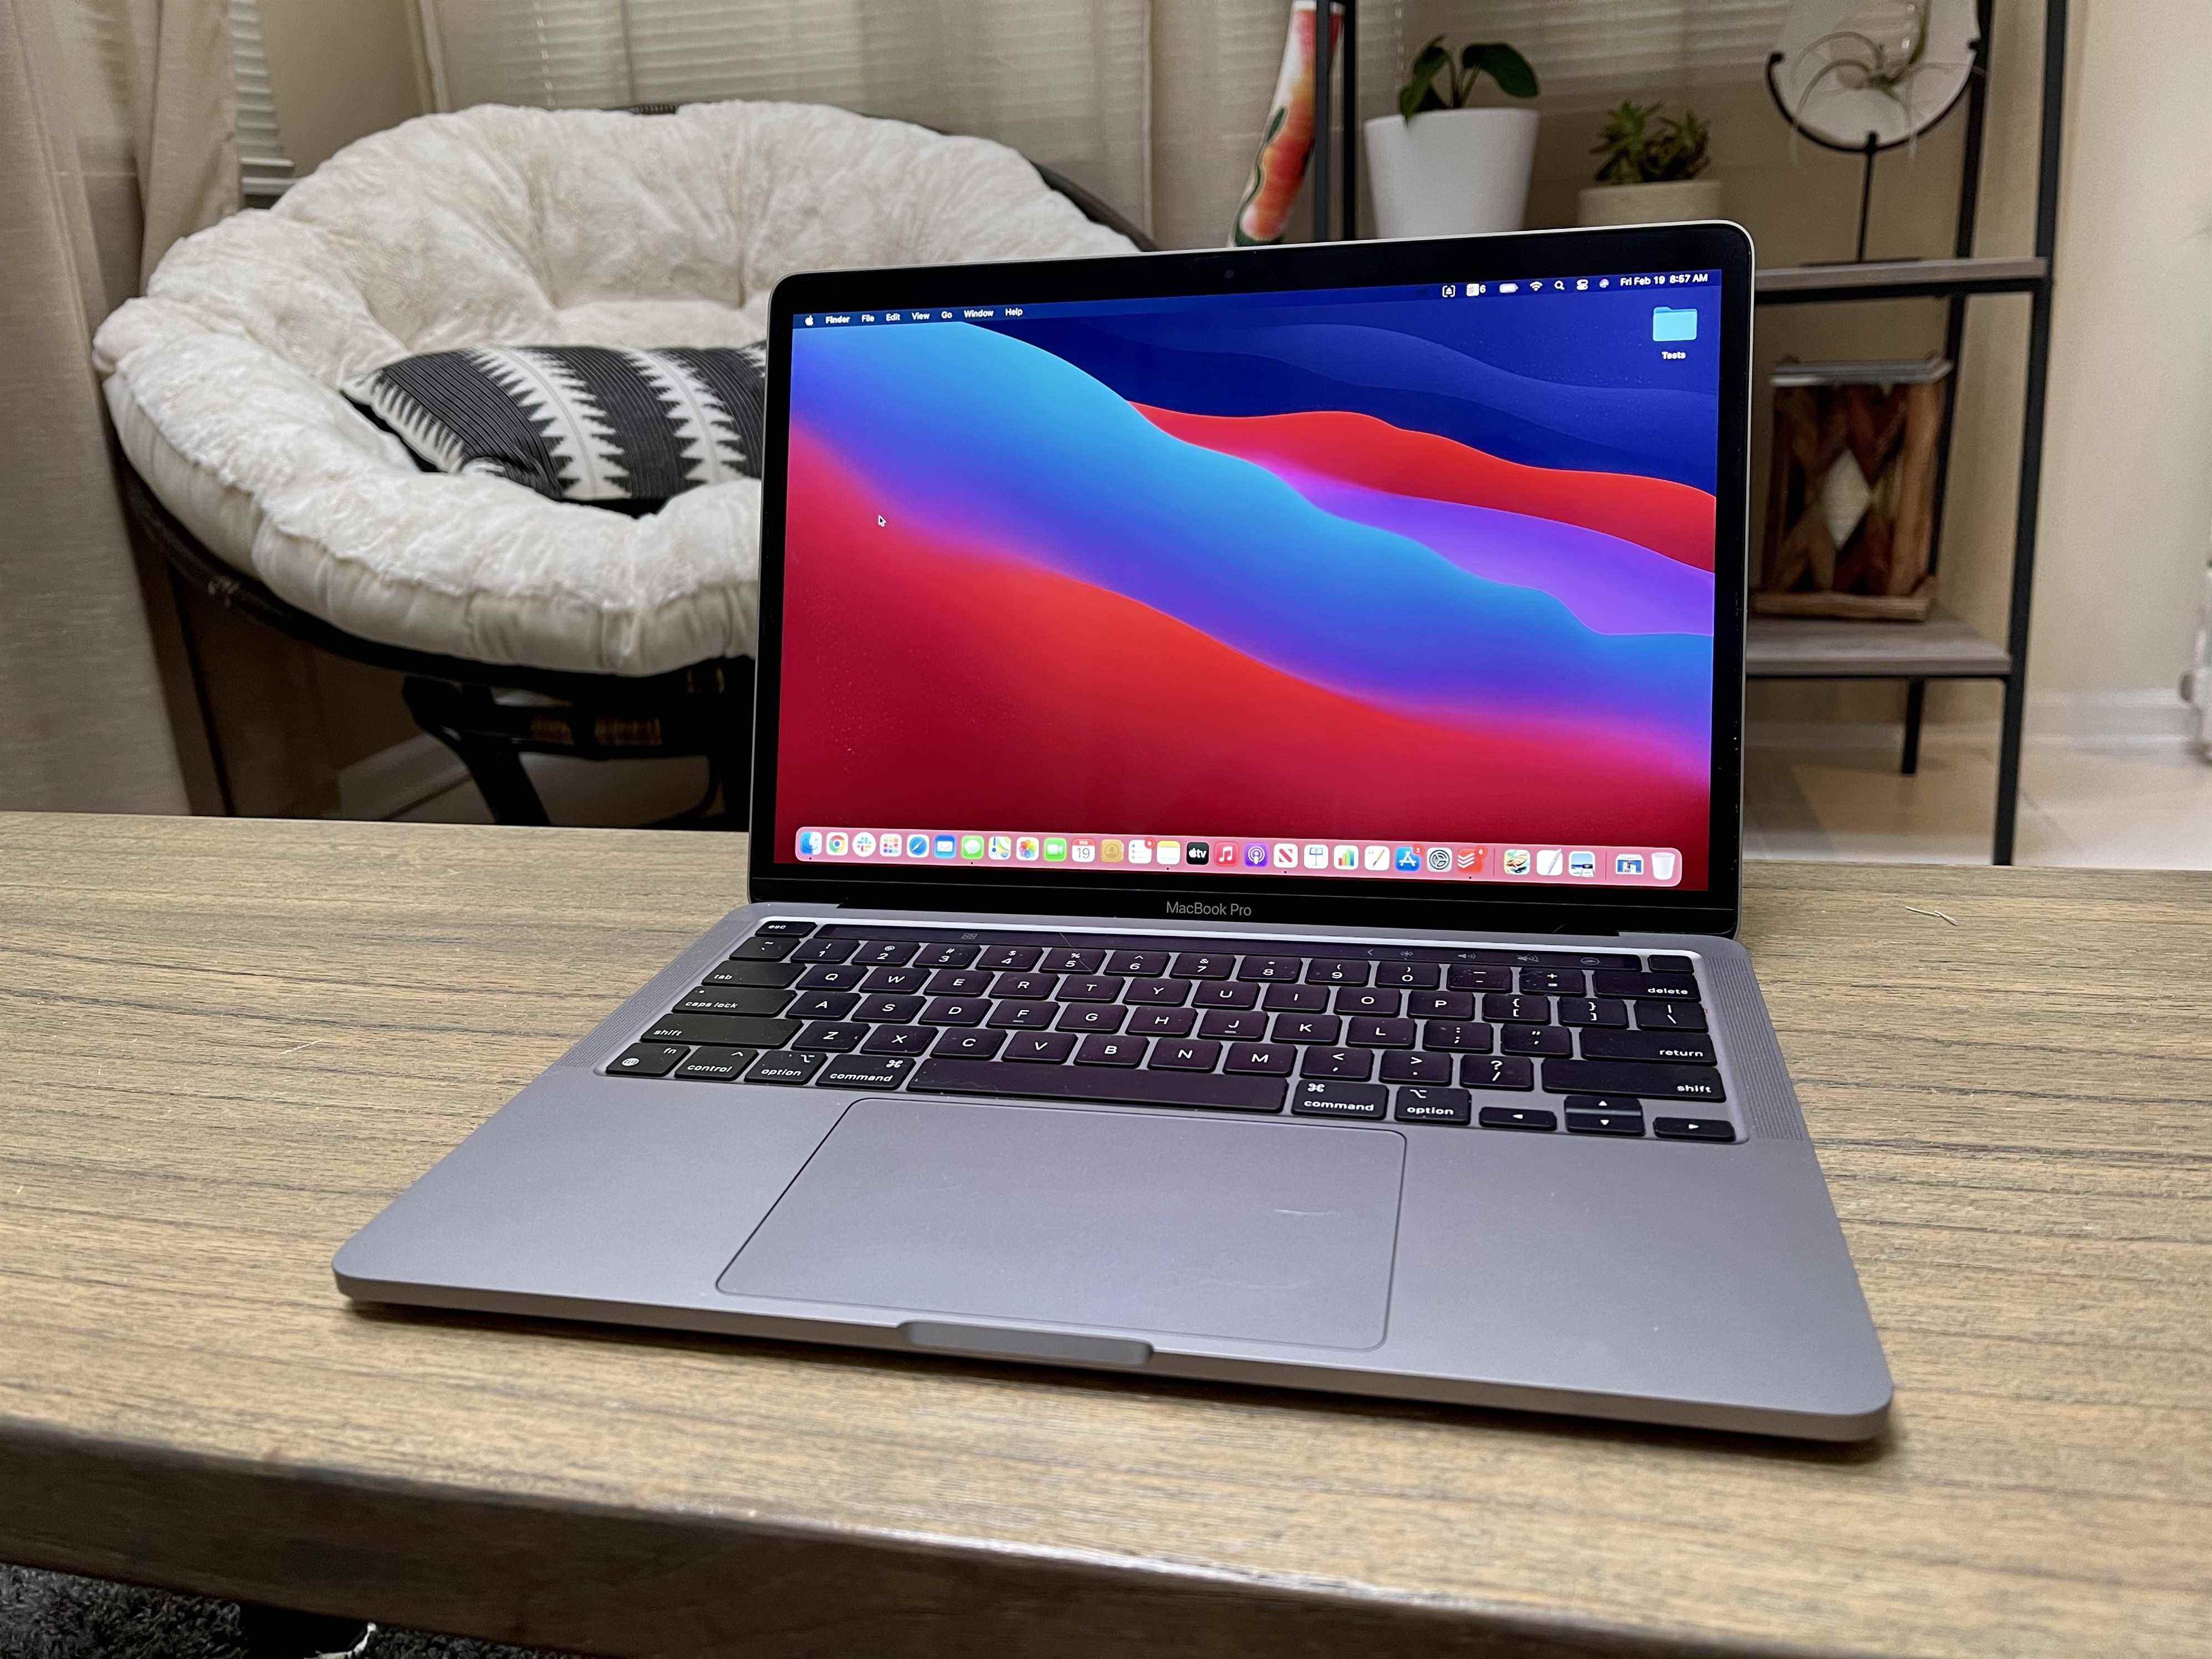 Les rumeurs suggèrent que le MacBook Pro 2022 sera un modèle d'entrée de gamme, et son prix en conséquence - attendez-vous à un prix de départ compris entre 1 299 $ et 1 499 $.